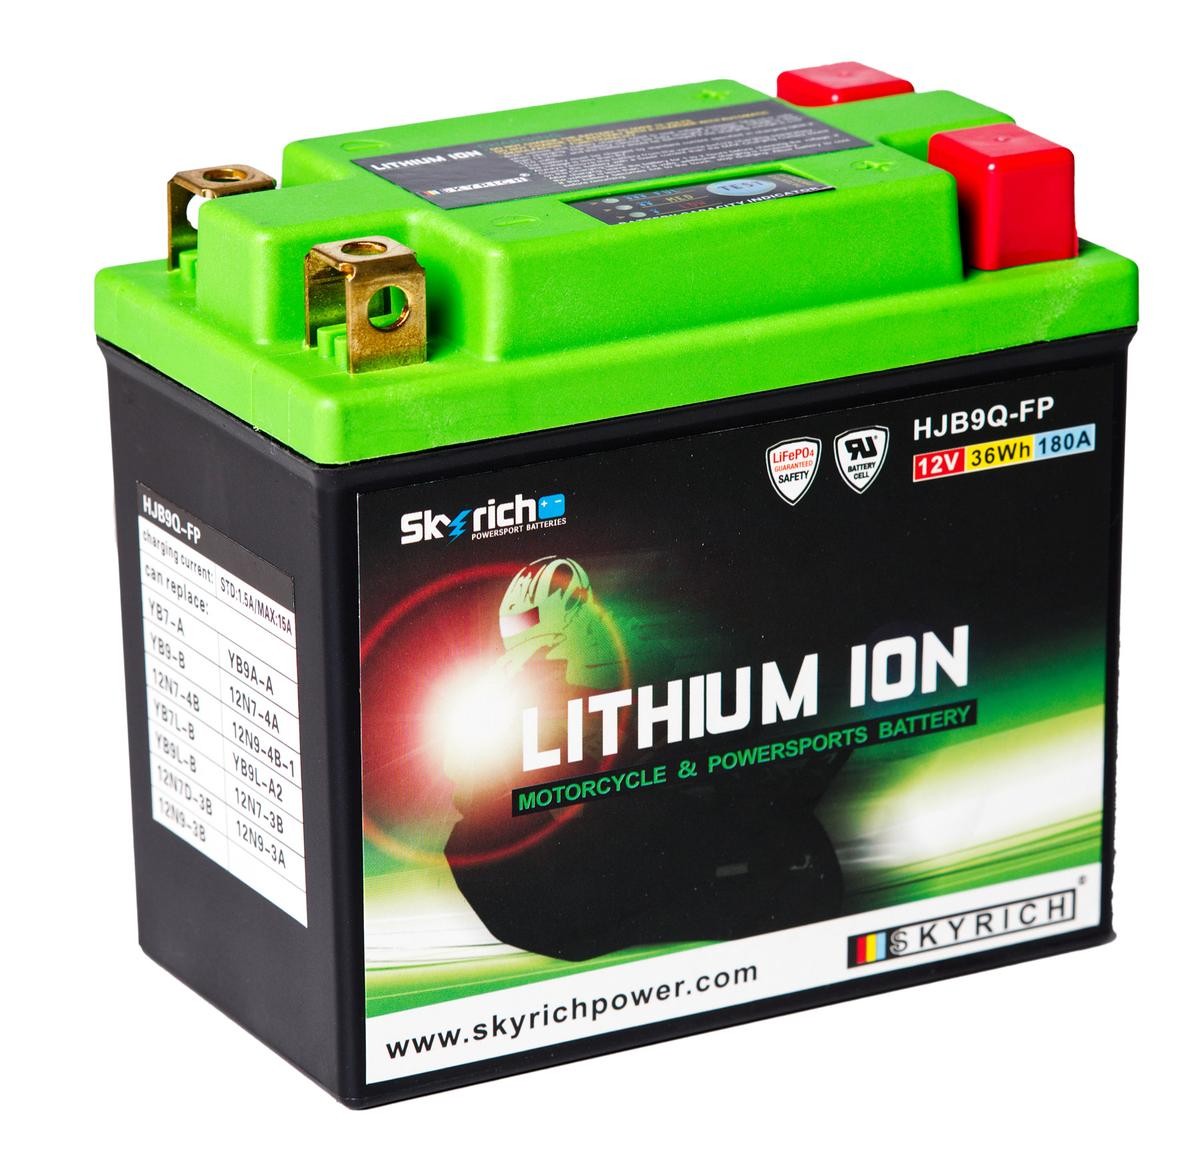 CAGIVA MITO Batterie 12V 3Ah 180A N Li-Ionen-Batterie SKYRICH LITHIUM ION HJB9Q-FP